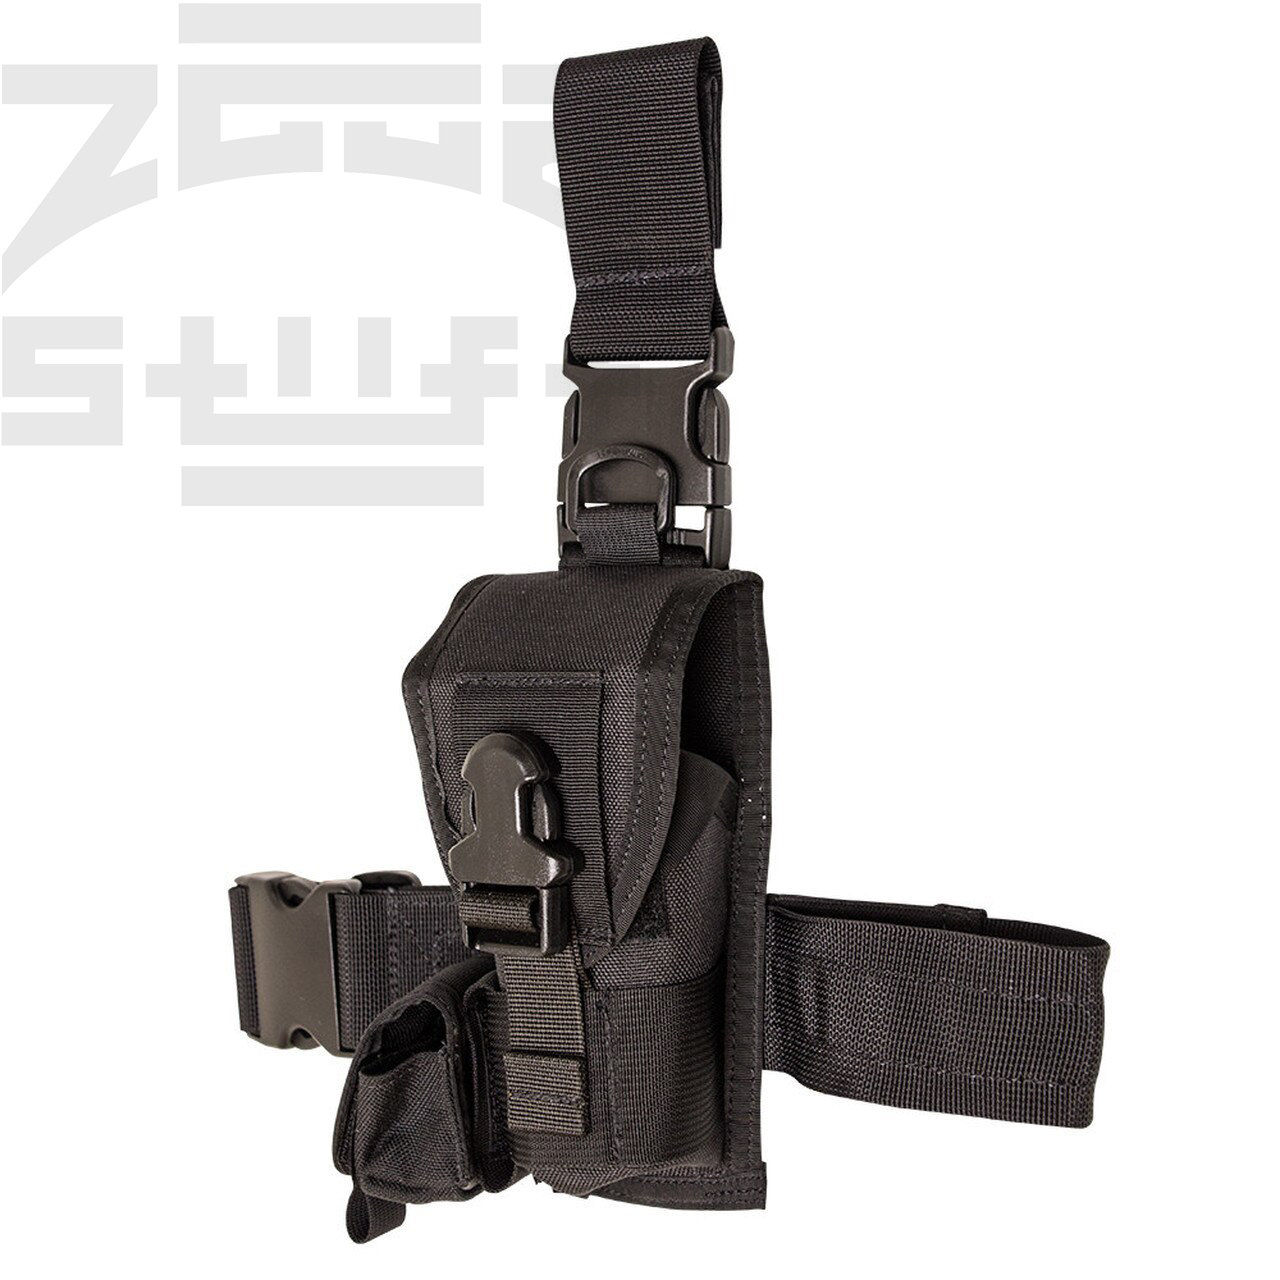 (ZGGB) Reengraving SOTech Taser X26P holster Taser stun gun tactical leg gun sleeve